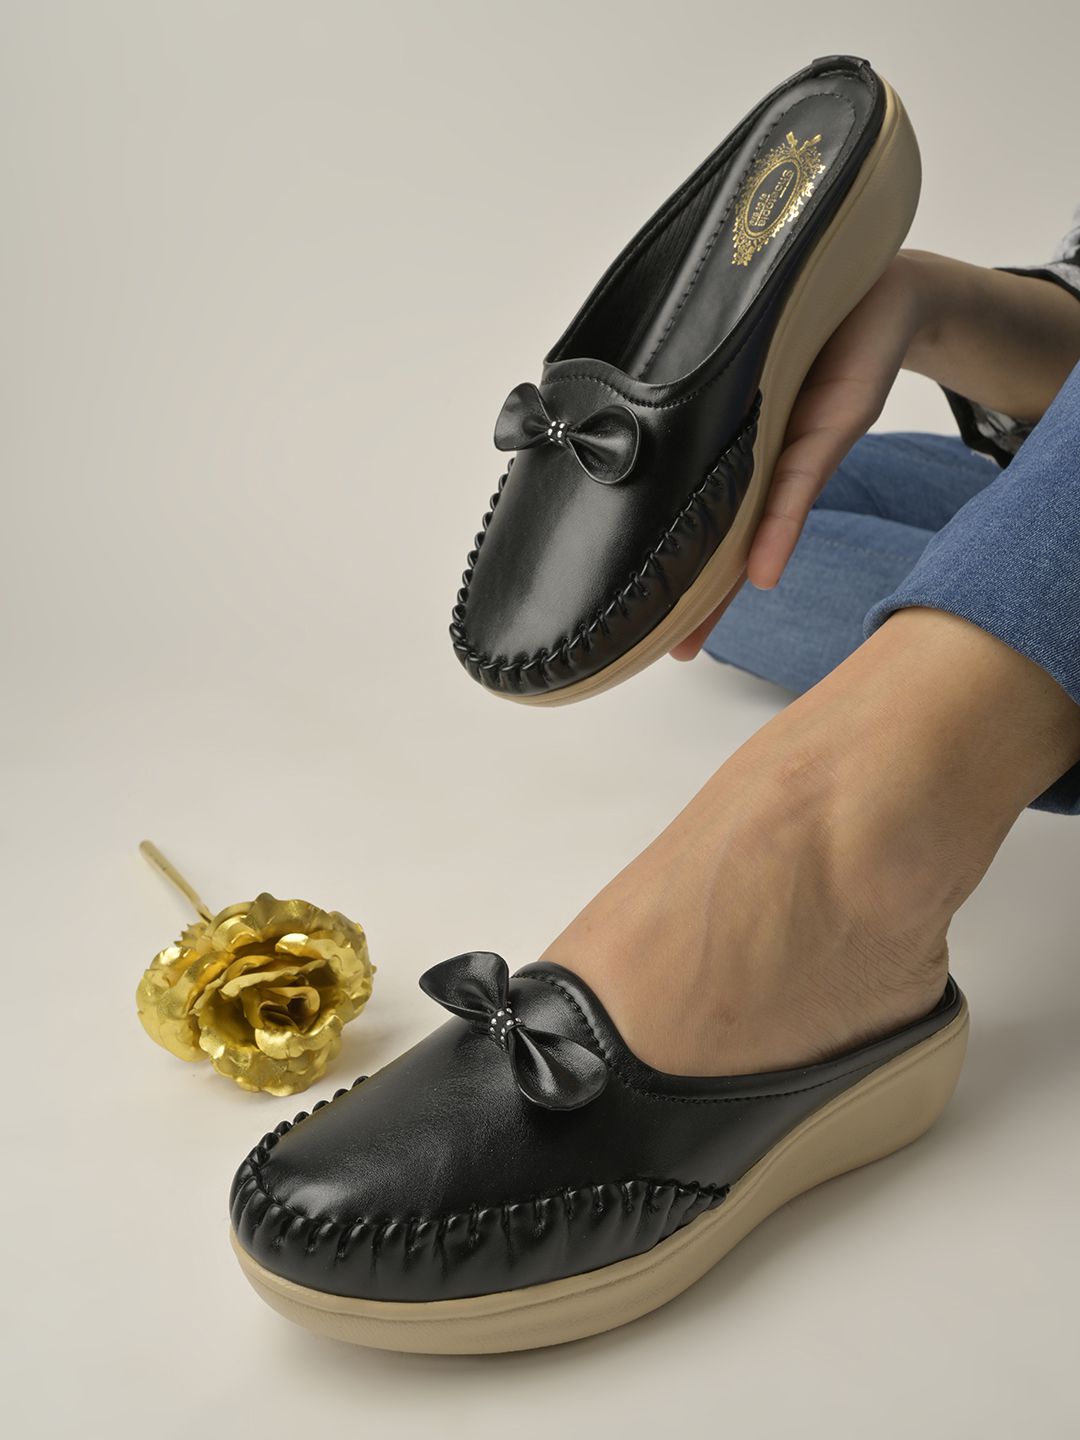     			Shoetopia - Black Women's Mules Shoes